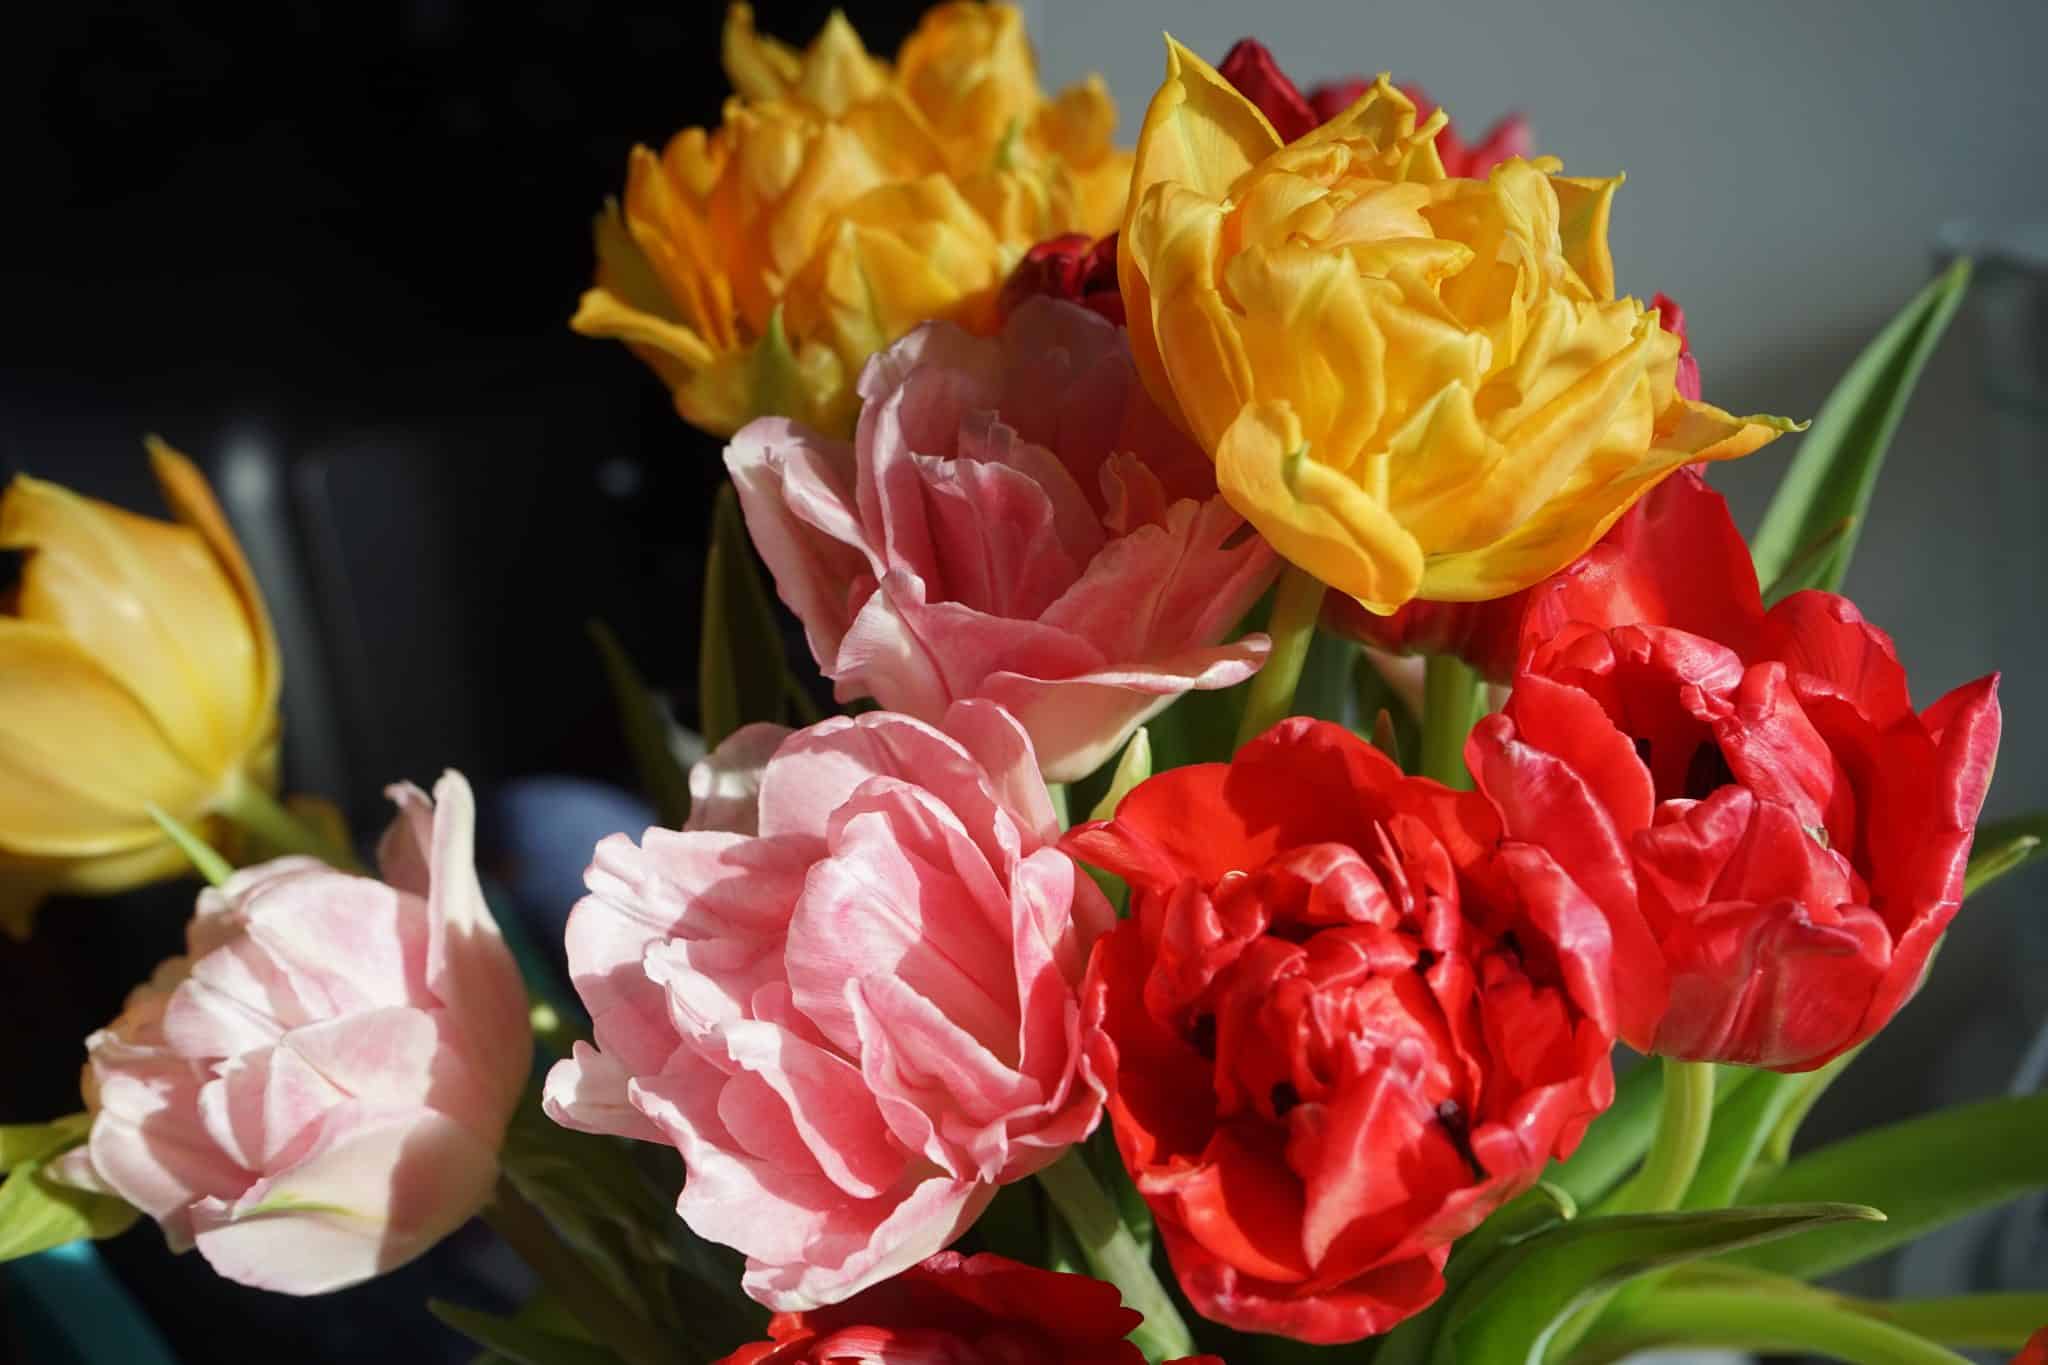 Тюльпаны заказывали? - интервью с омским поставщиком цветов Ириной Весной